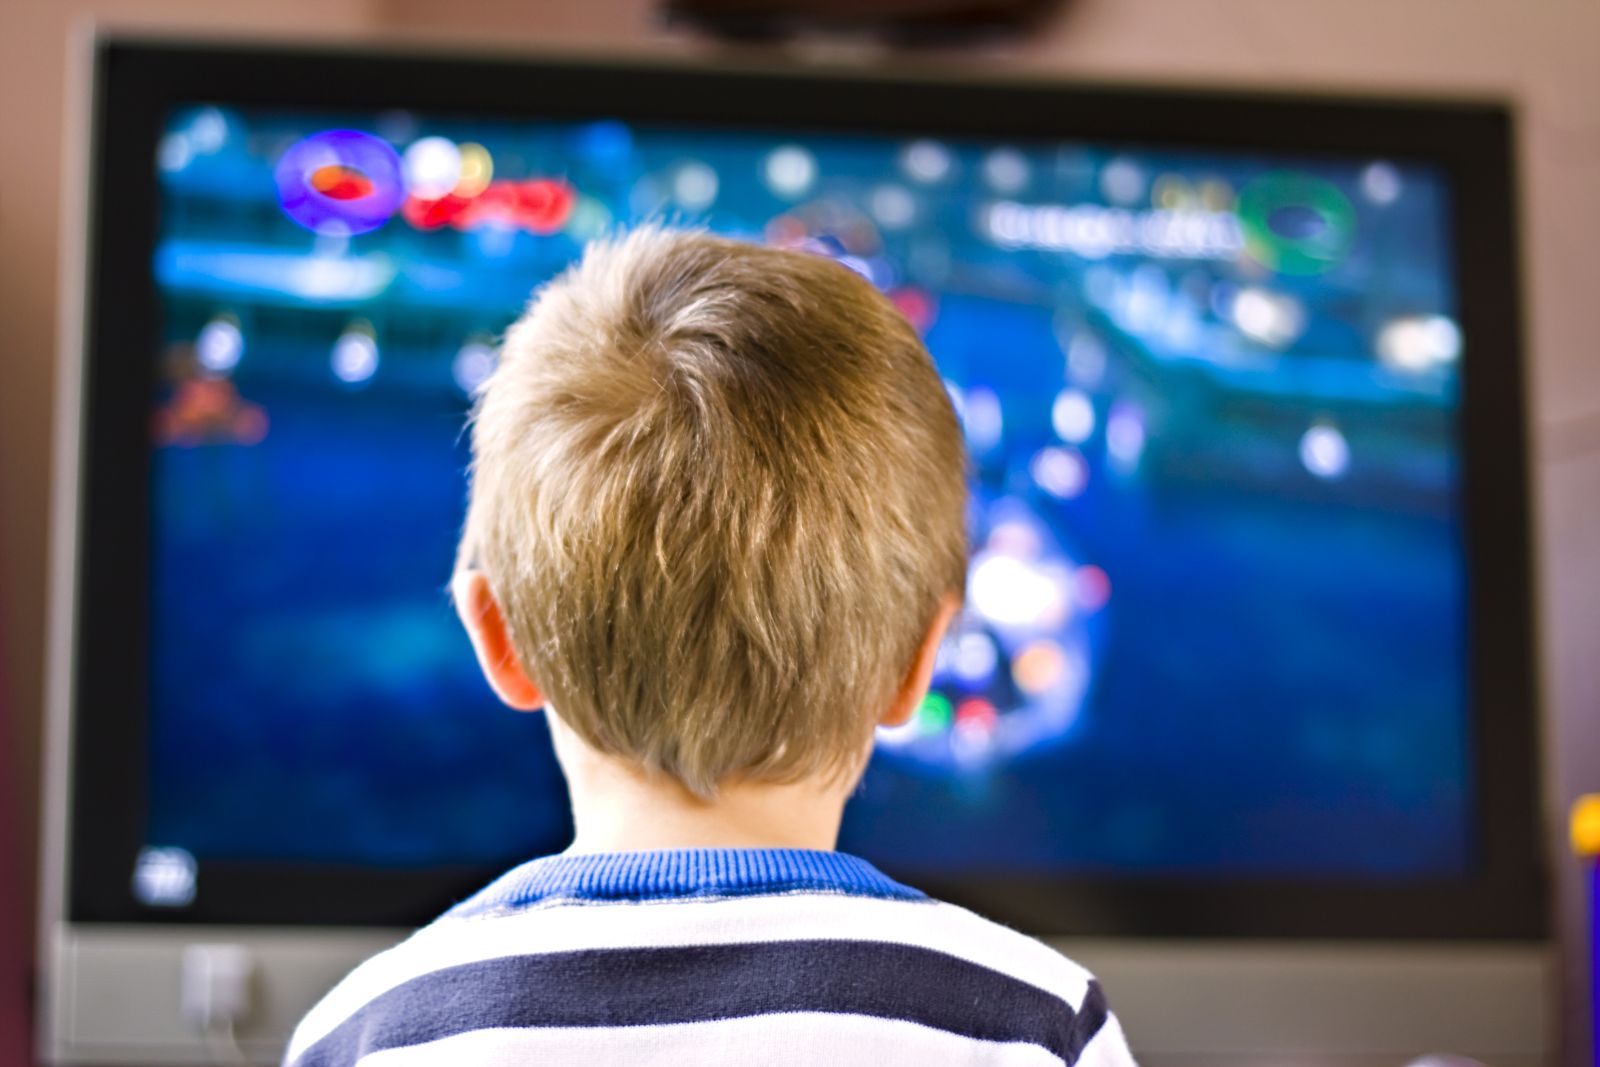 Los niños soportan un bombardeo de anuncios de comida basura en televisión